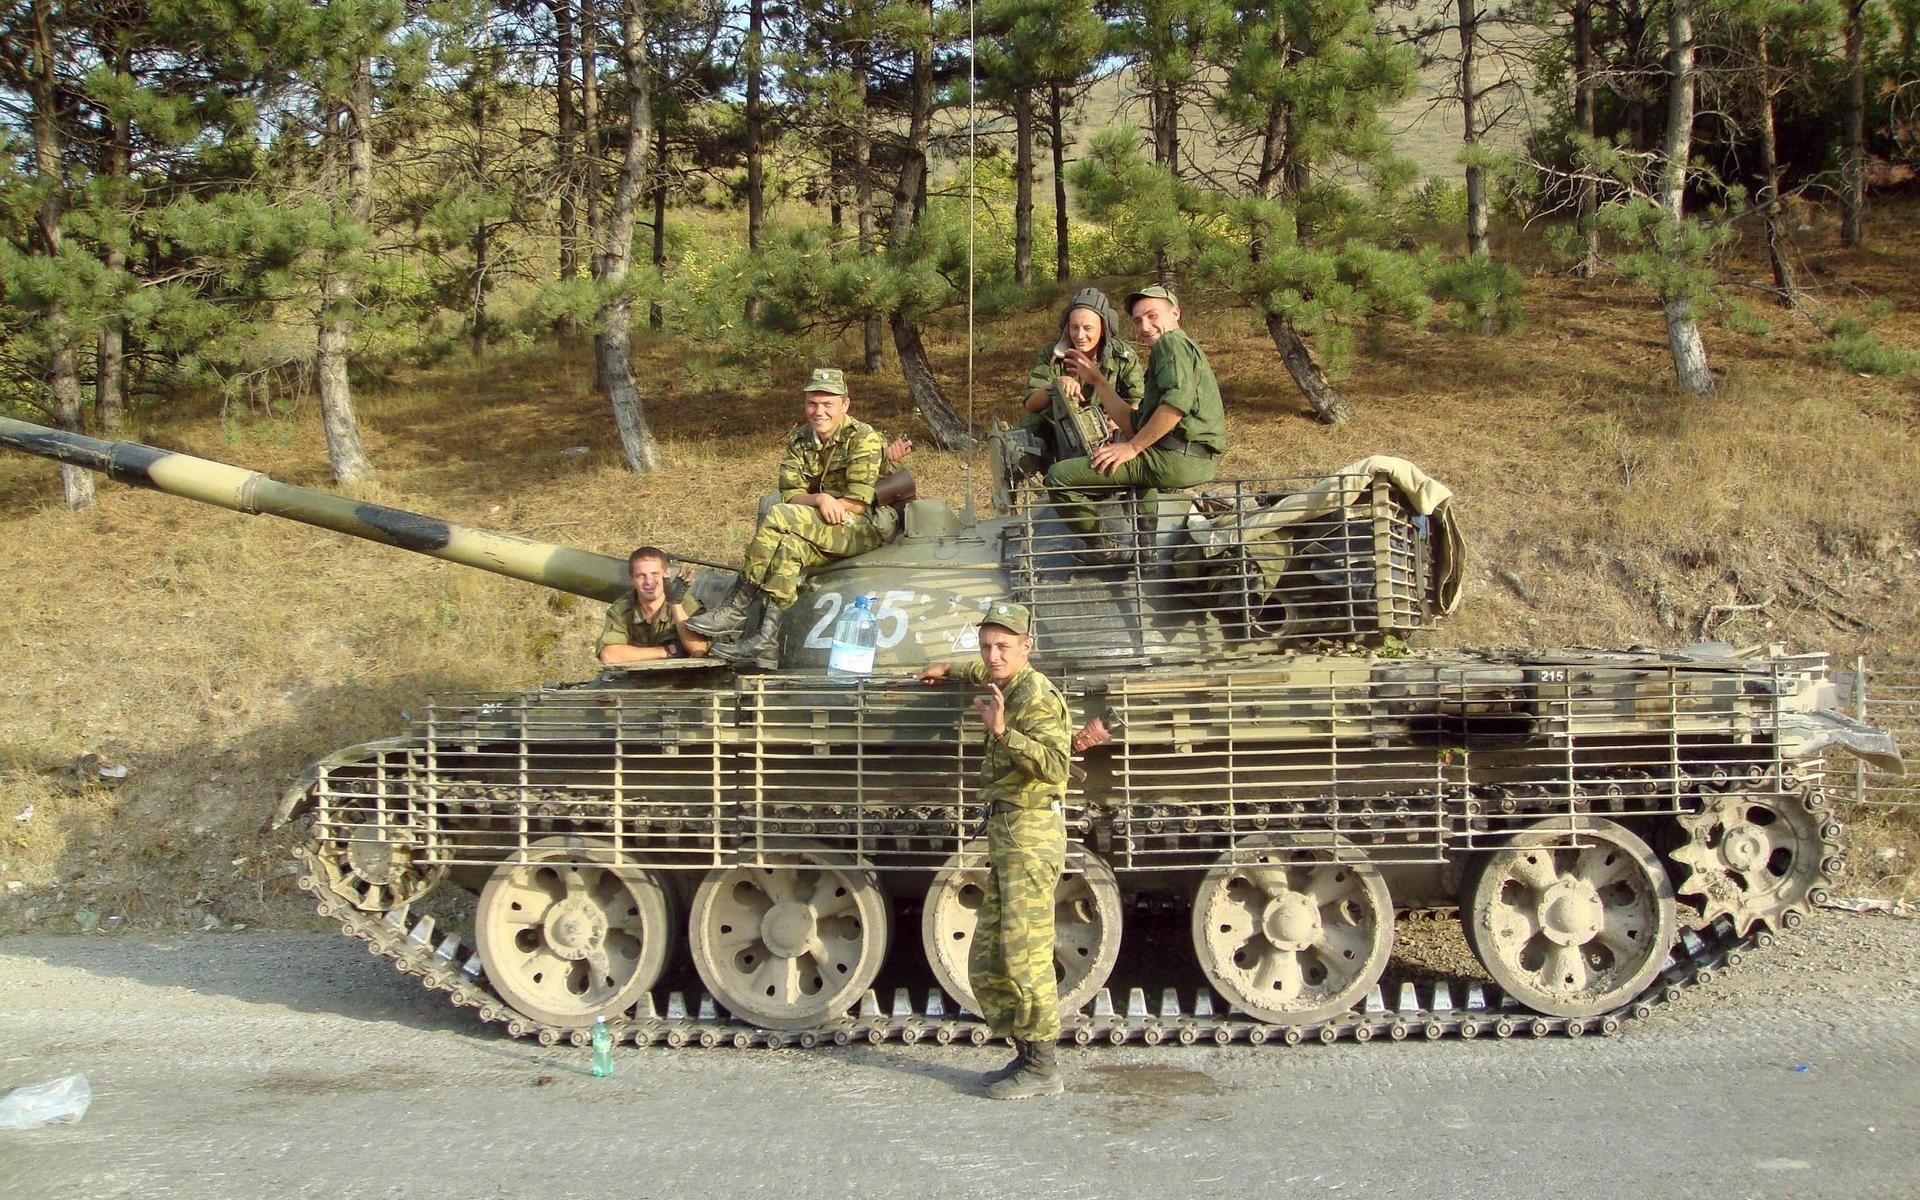 l full size military tanks